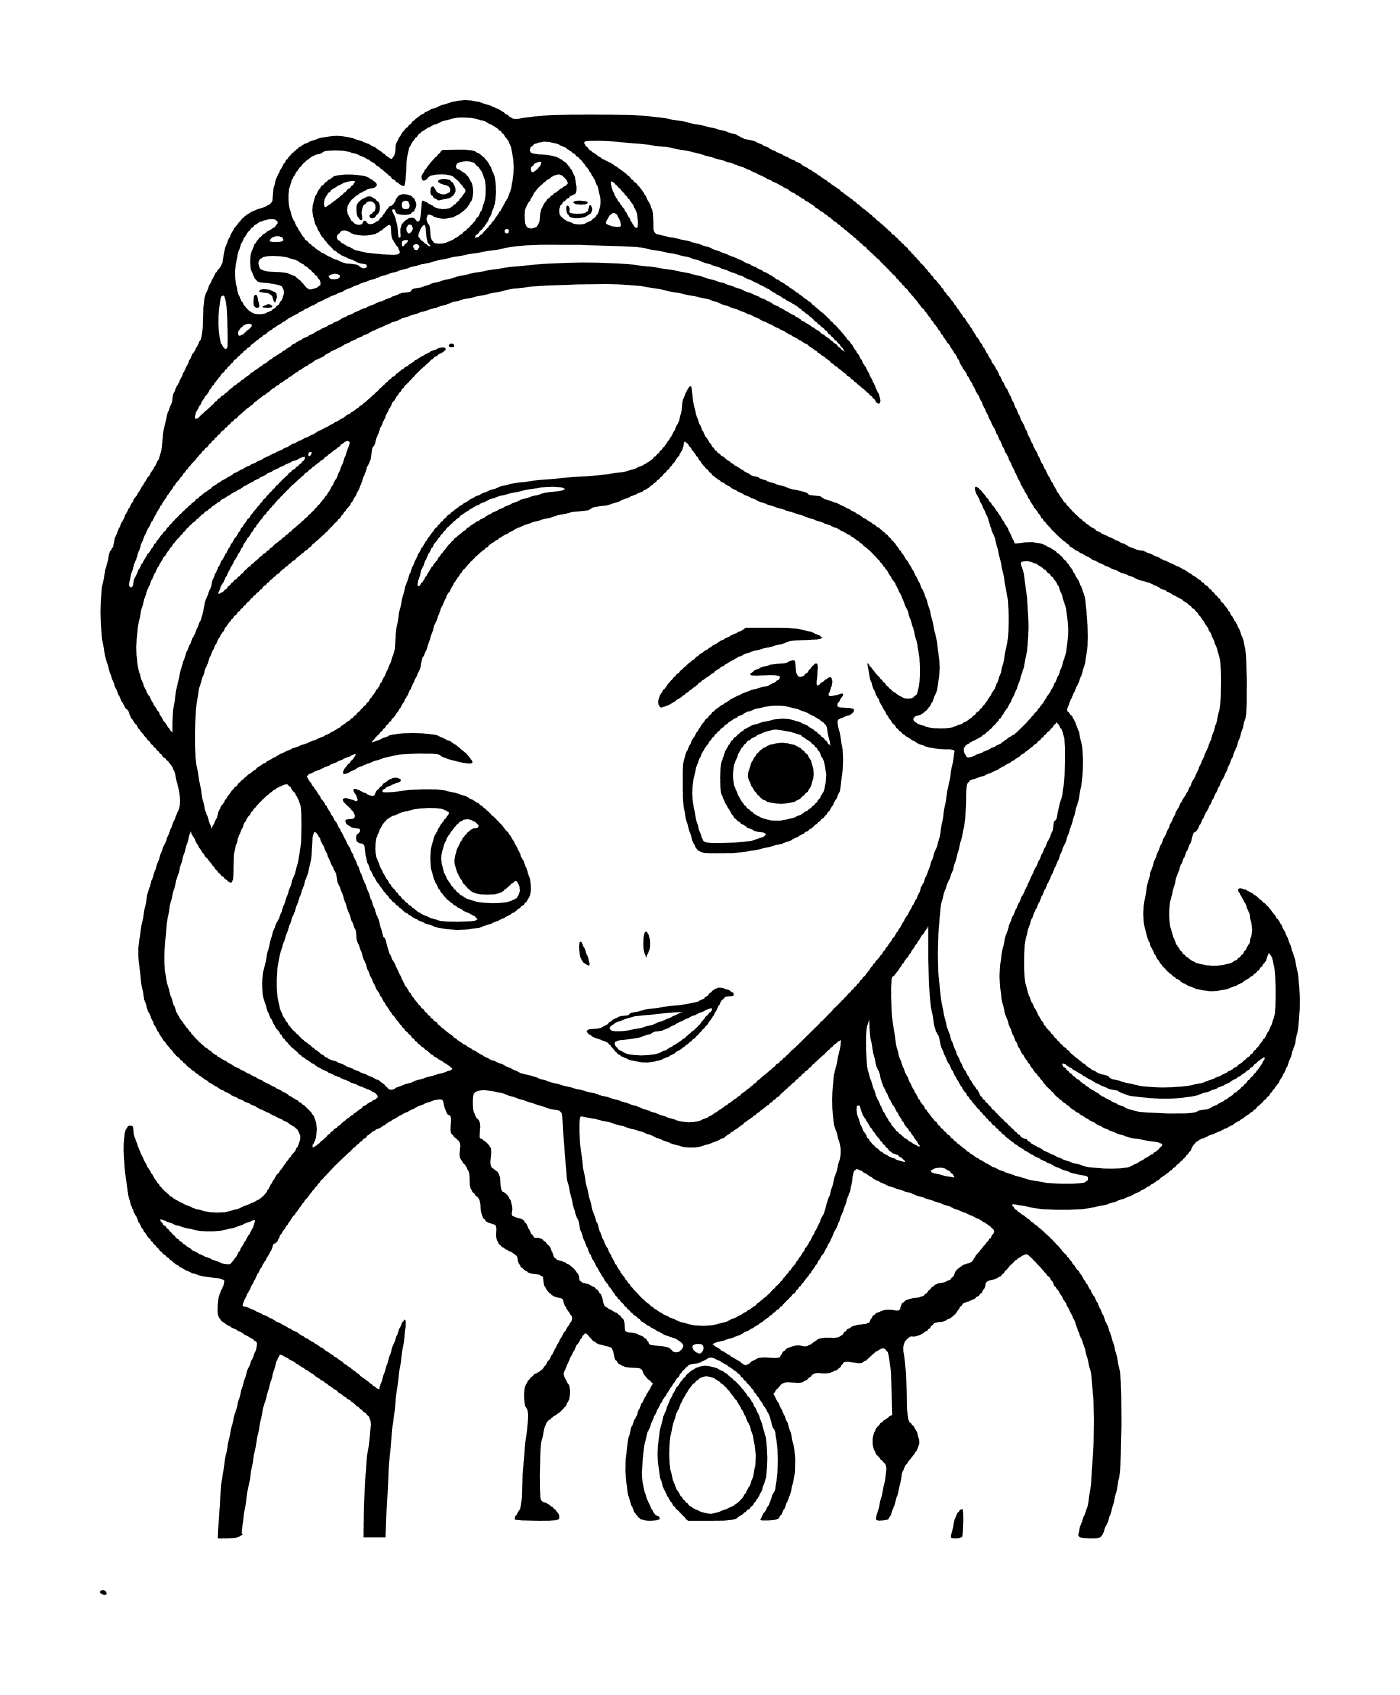  1- وجه الأميرة صوفيا ووجهها وصورتها 